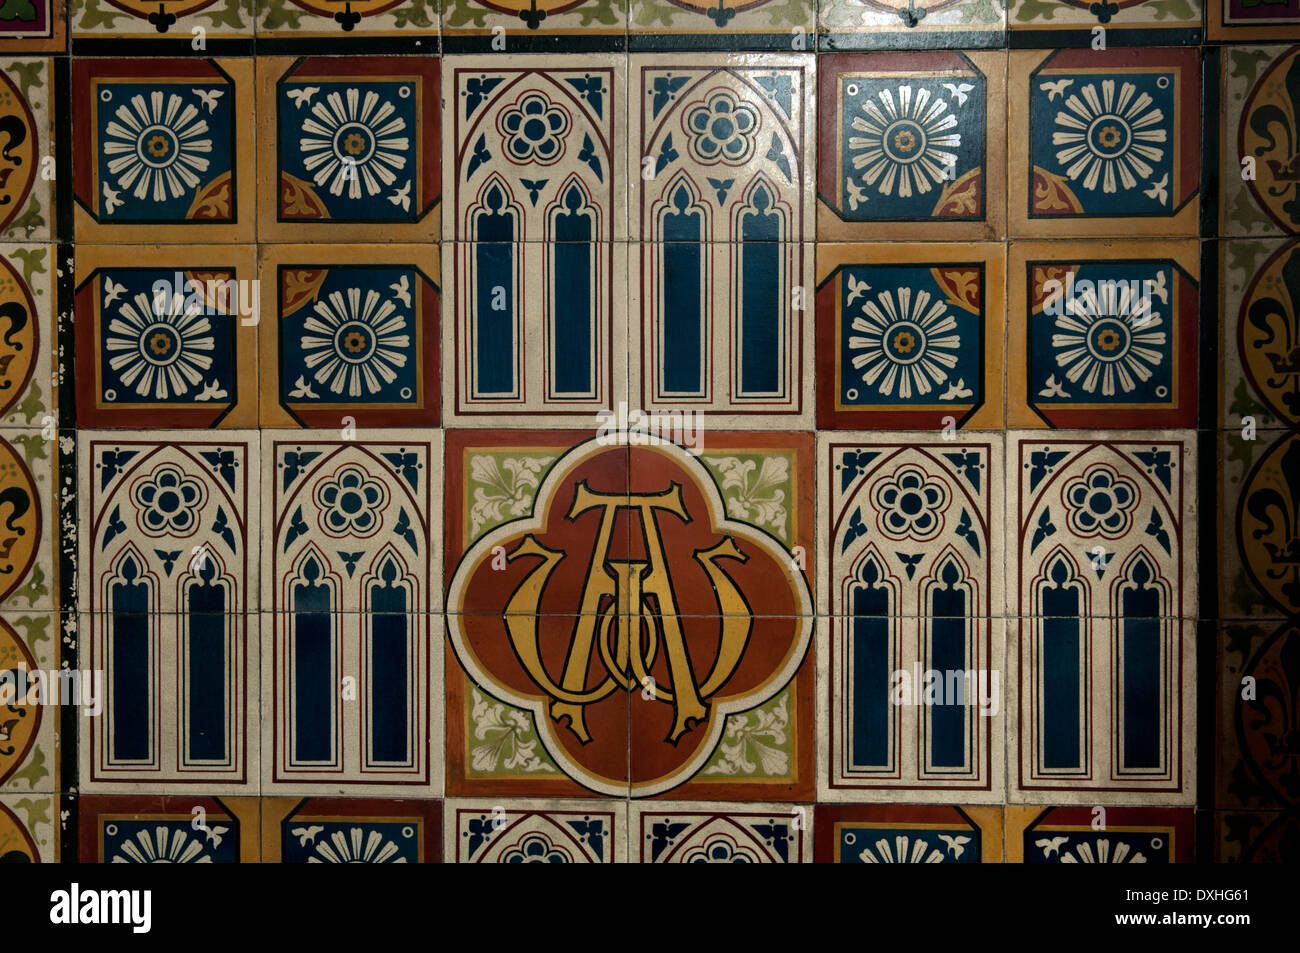 Carreaux de mur dans l'église All Saints, Harbury, Warwickshire, England, UK Banque D'Images